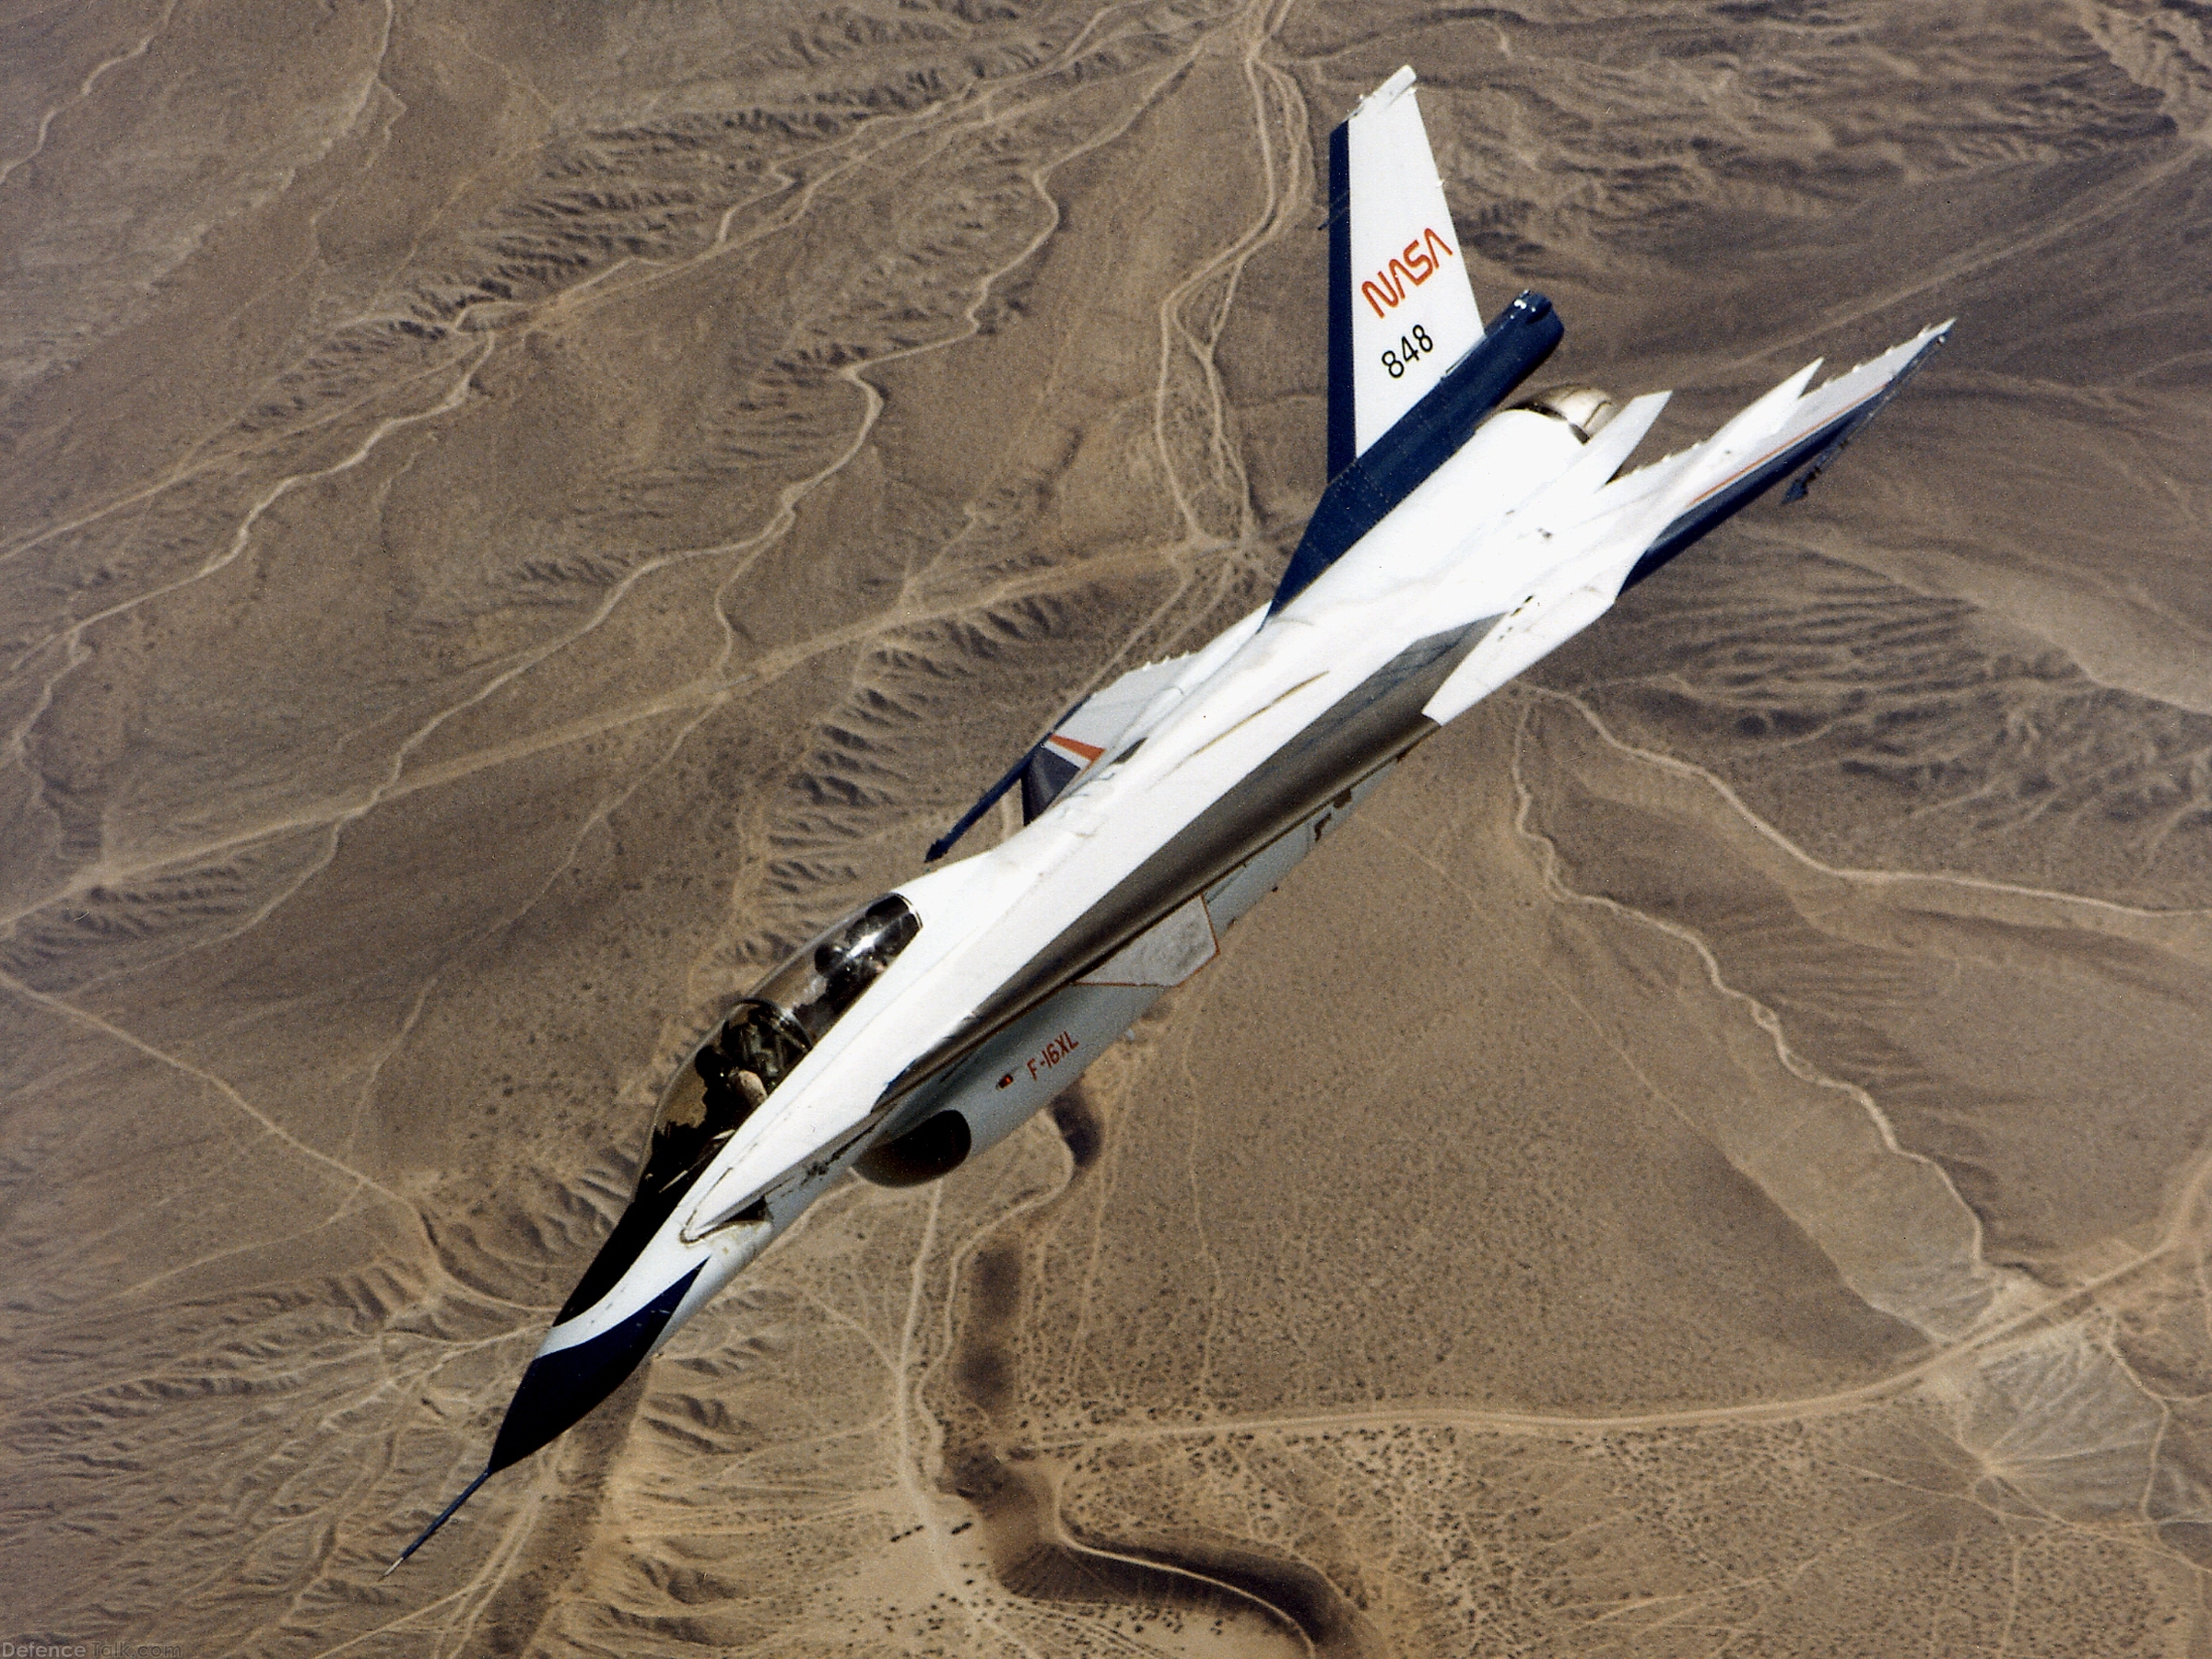 NASA F-16XL Delta Wing Research Aircraft